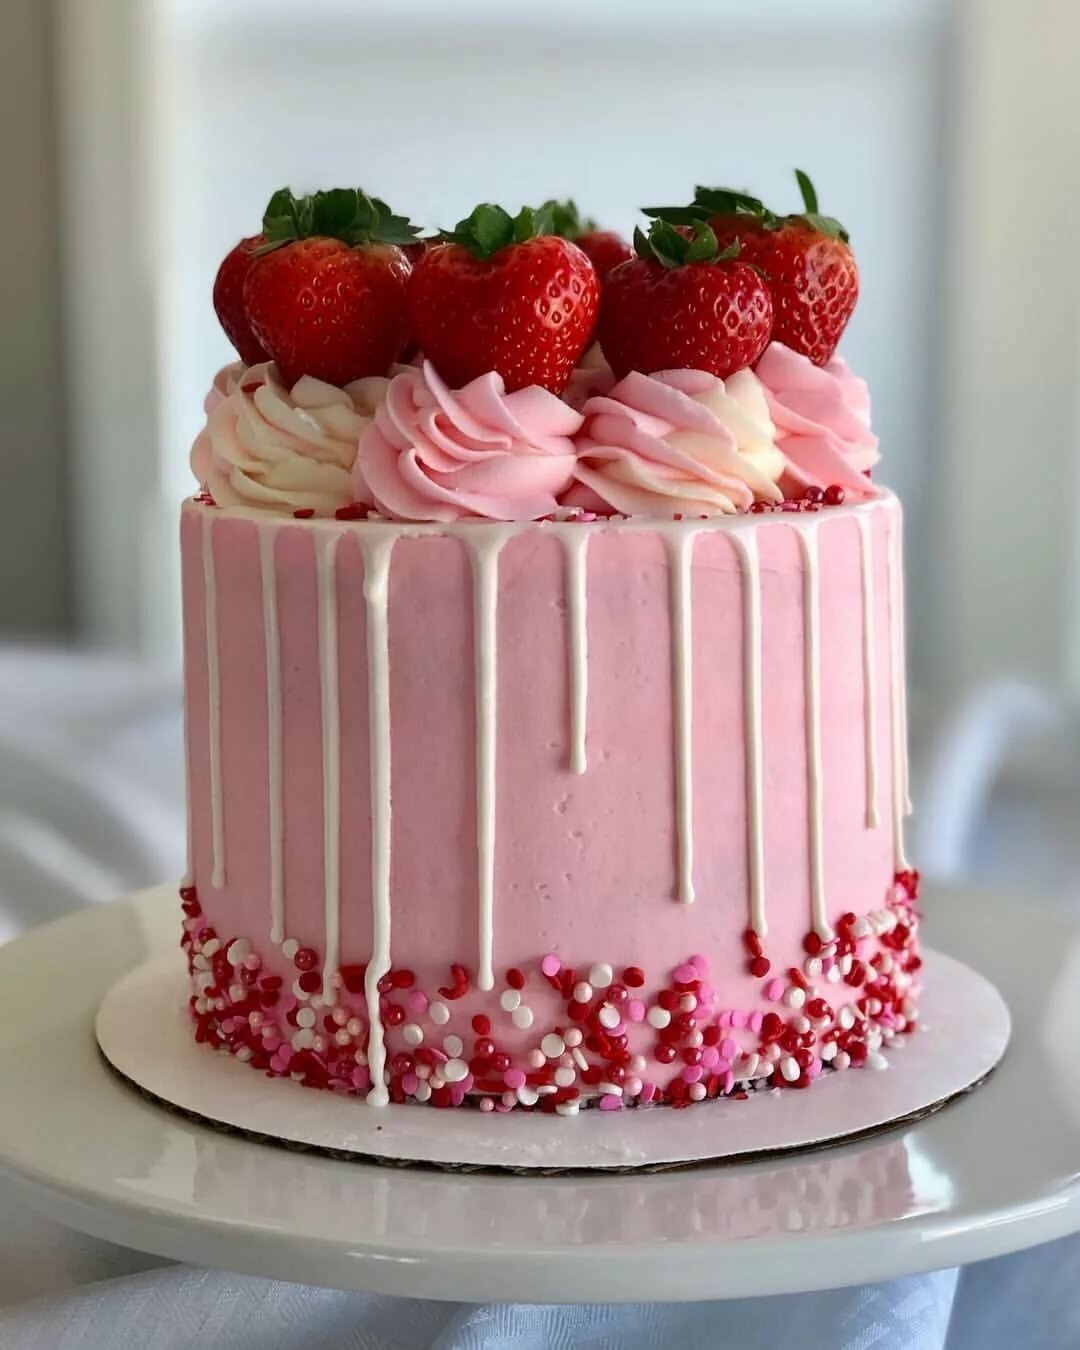 Сделать розовый торт